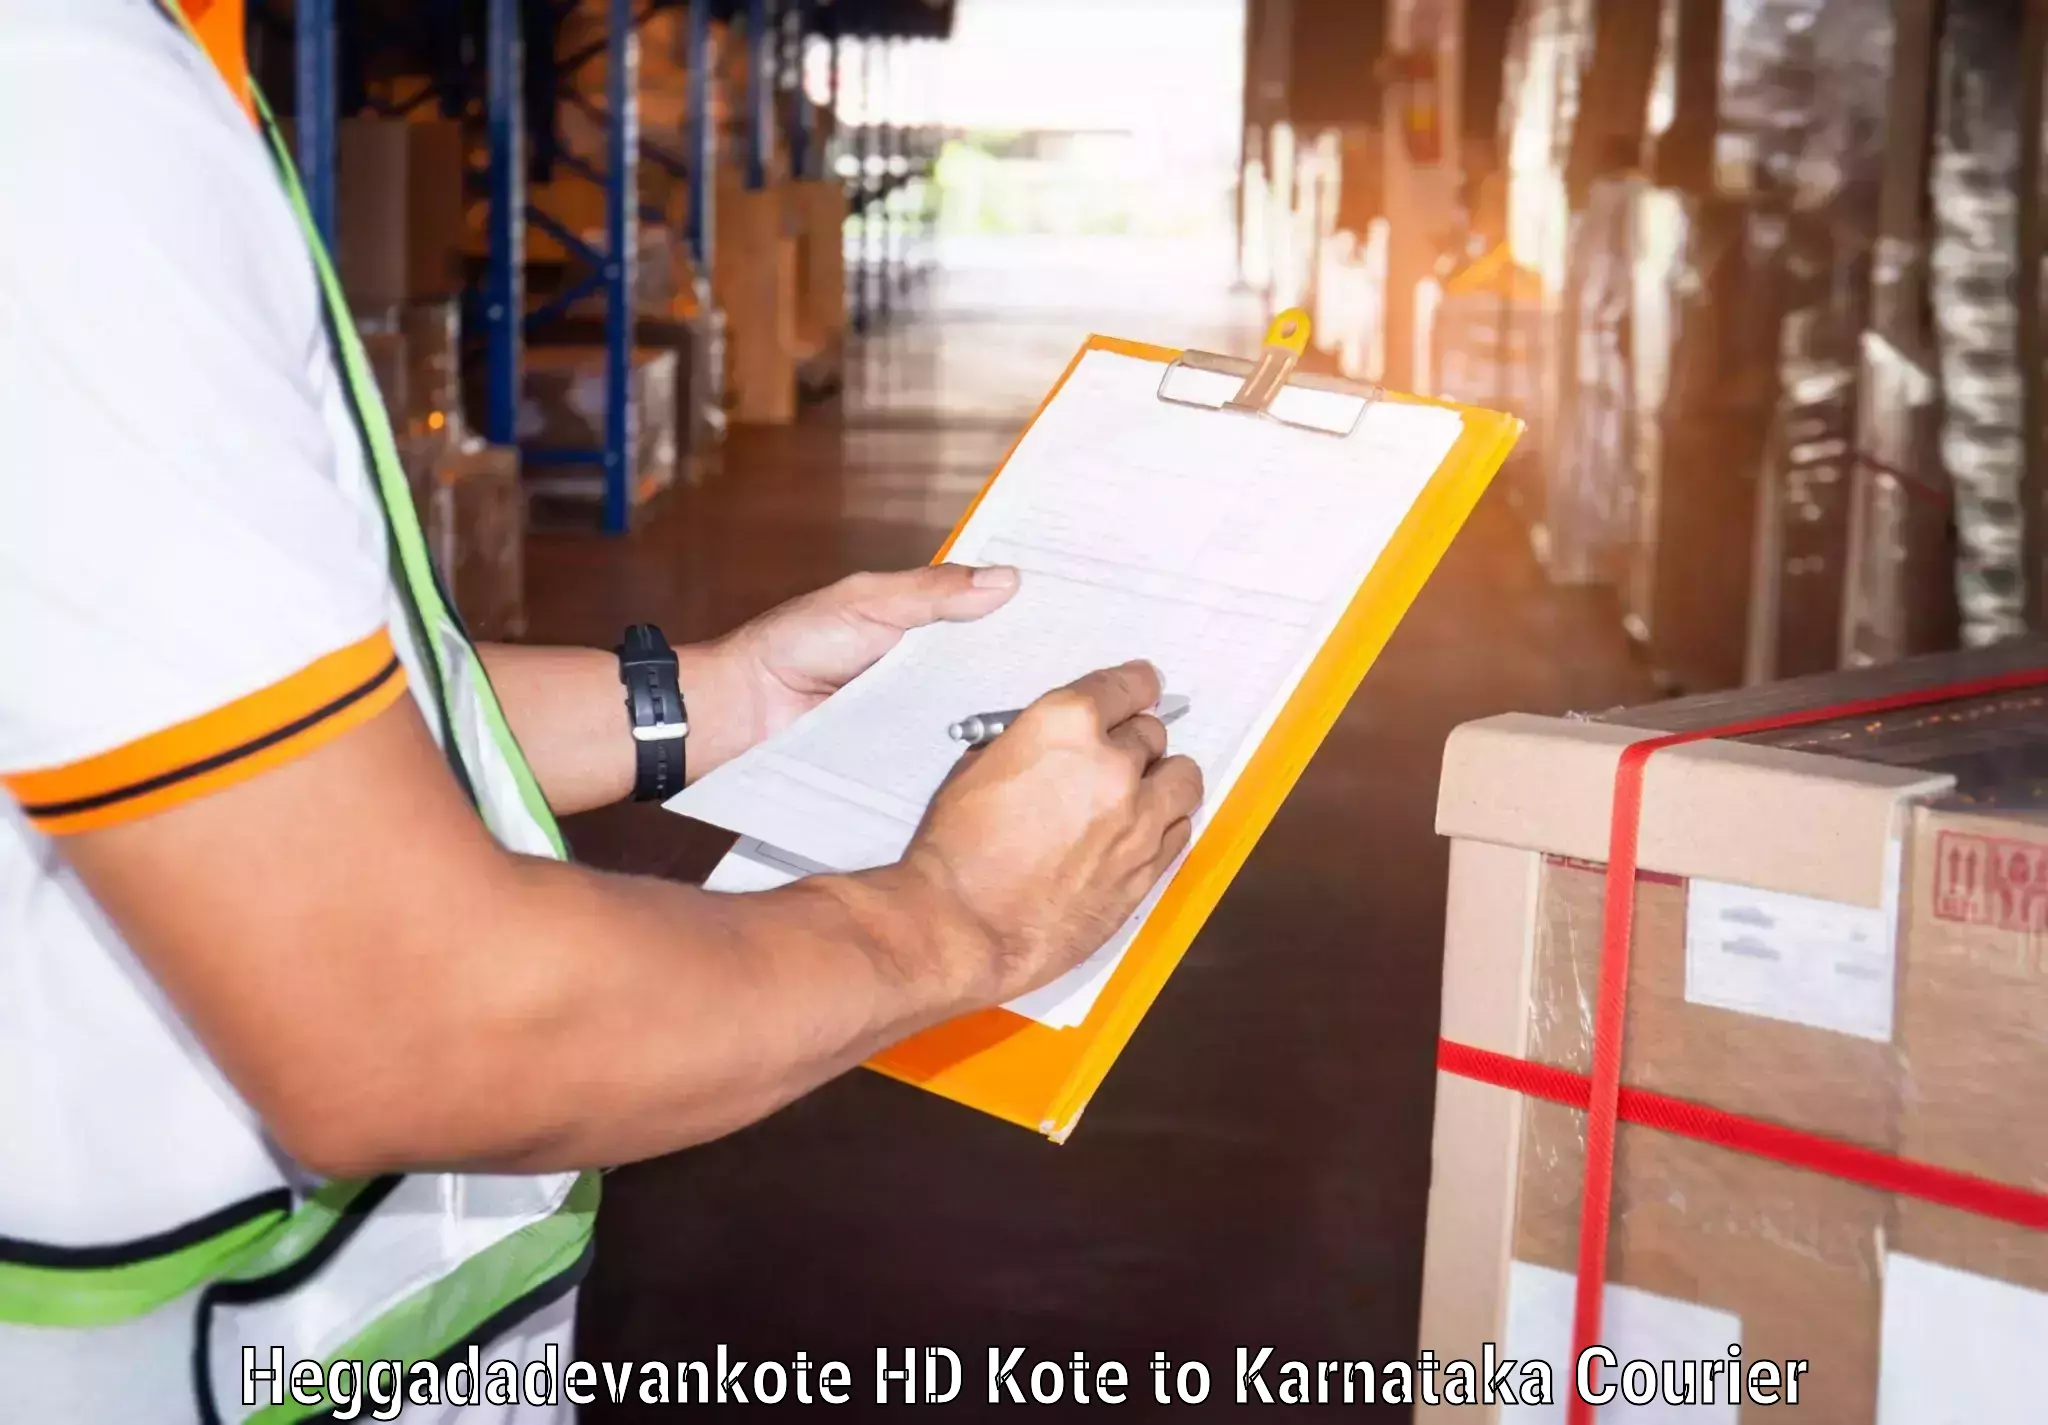 Tailored freight services Heggadadevankote HD Kote to Kittur